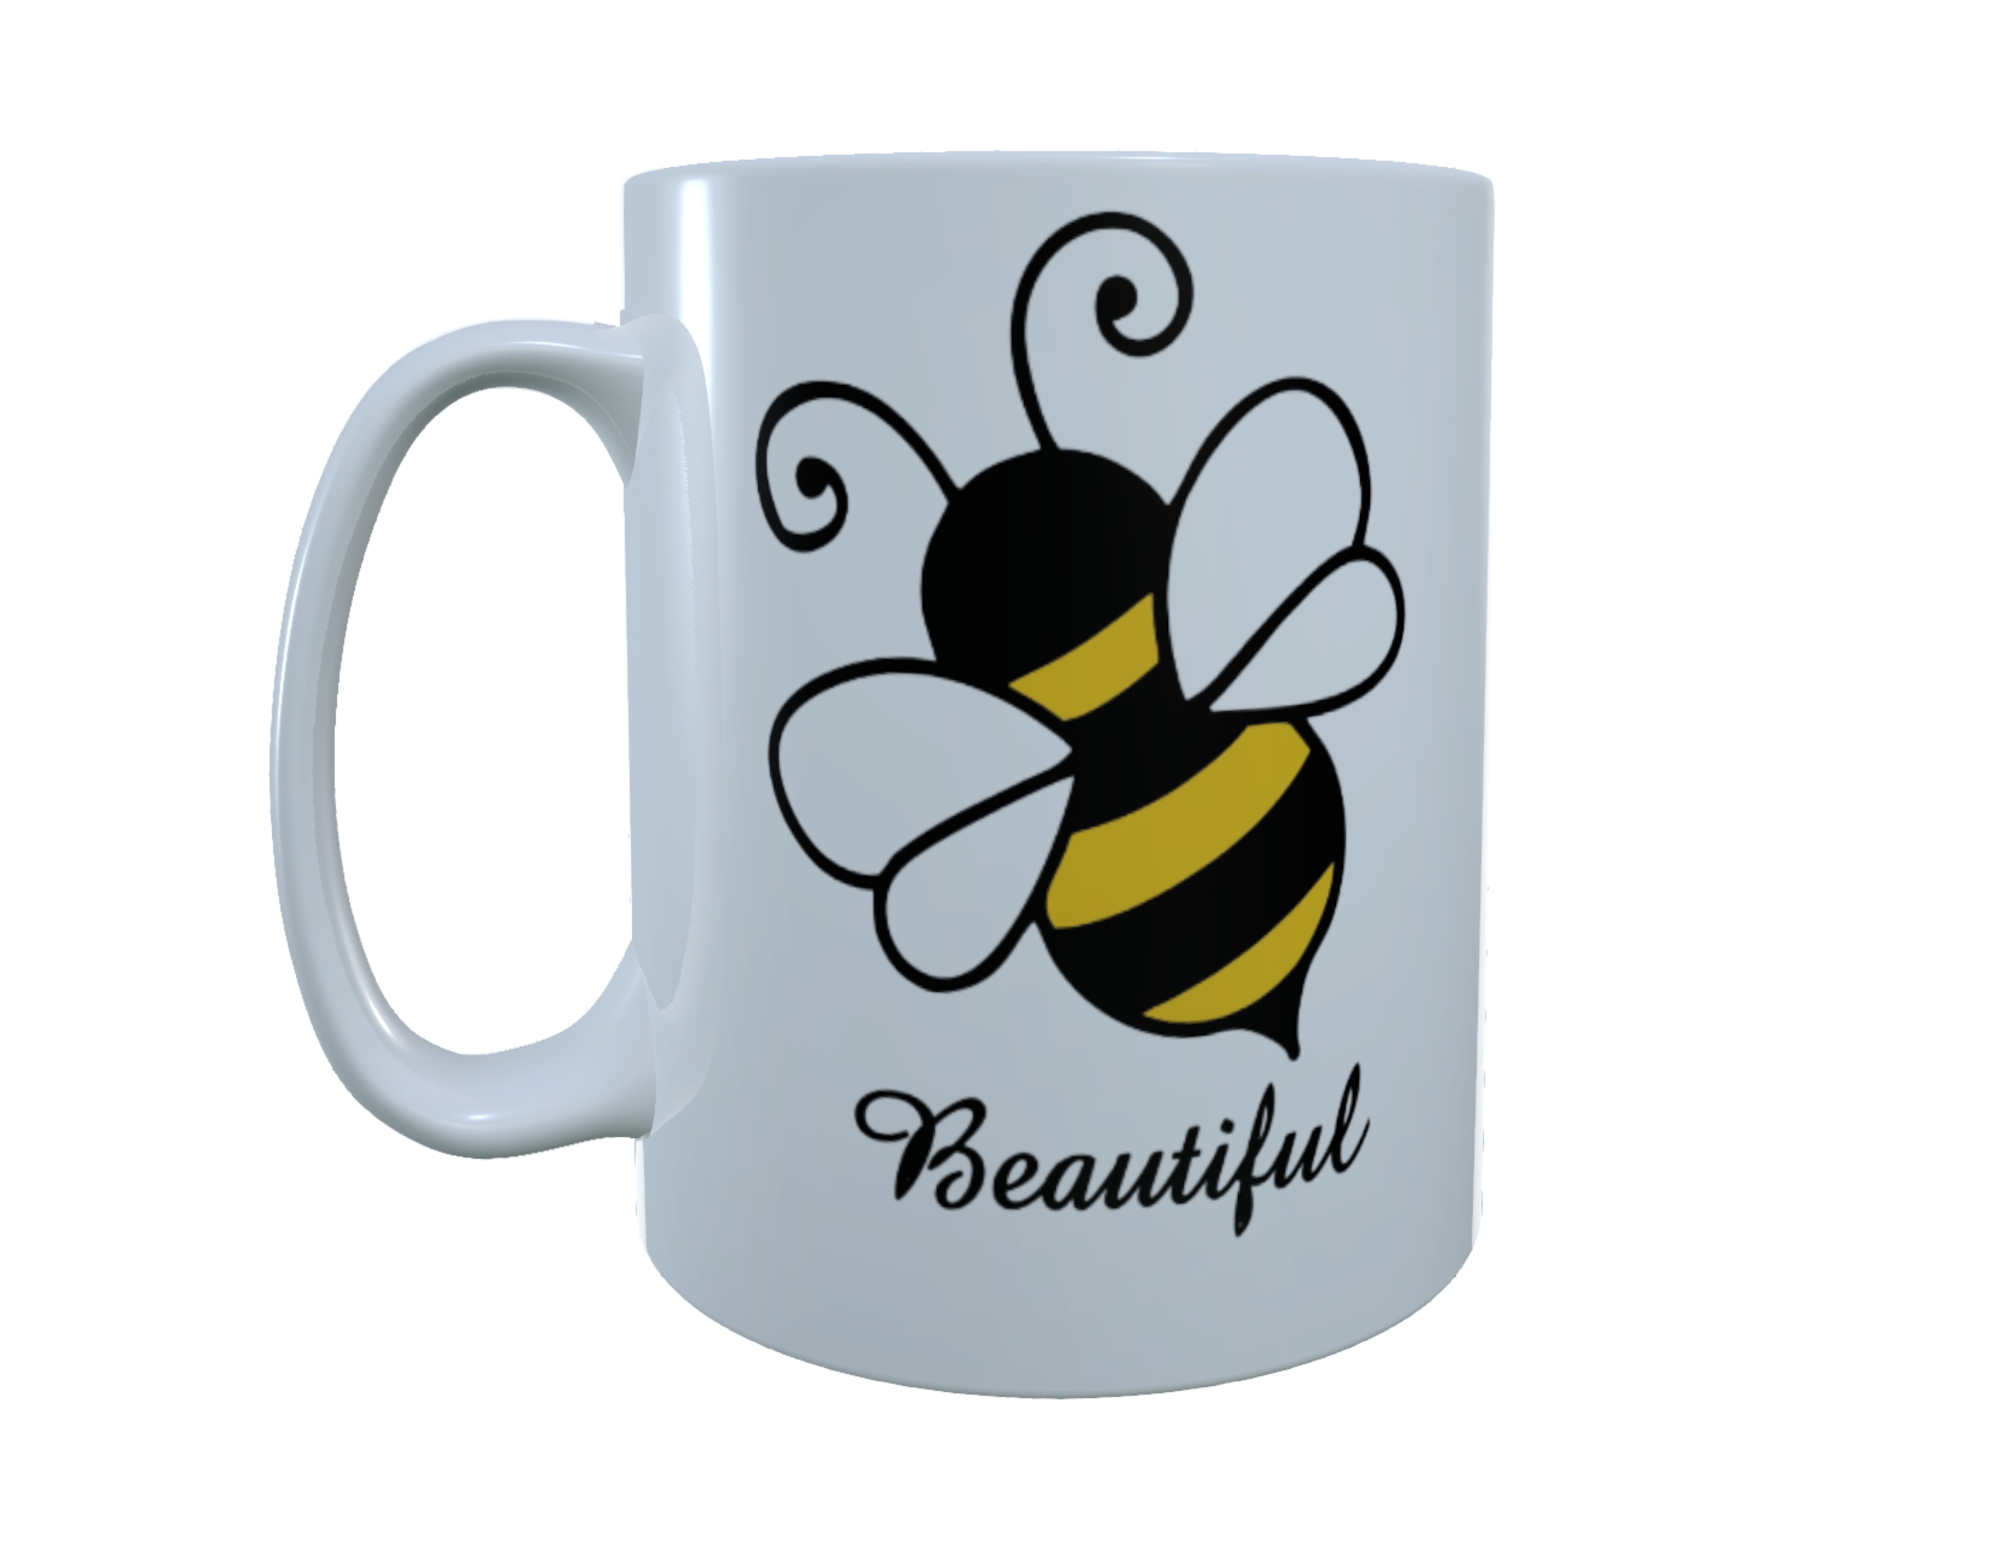 Bee Ceramic Mug - Bee Beautiful